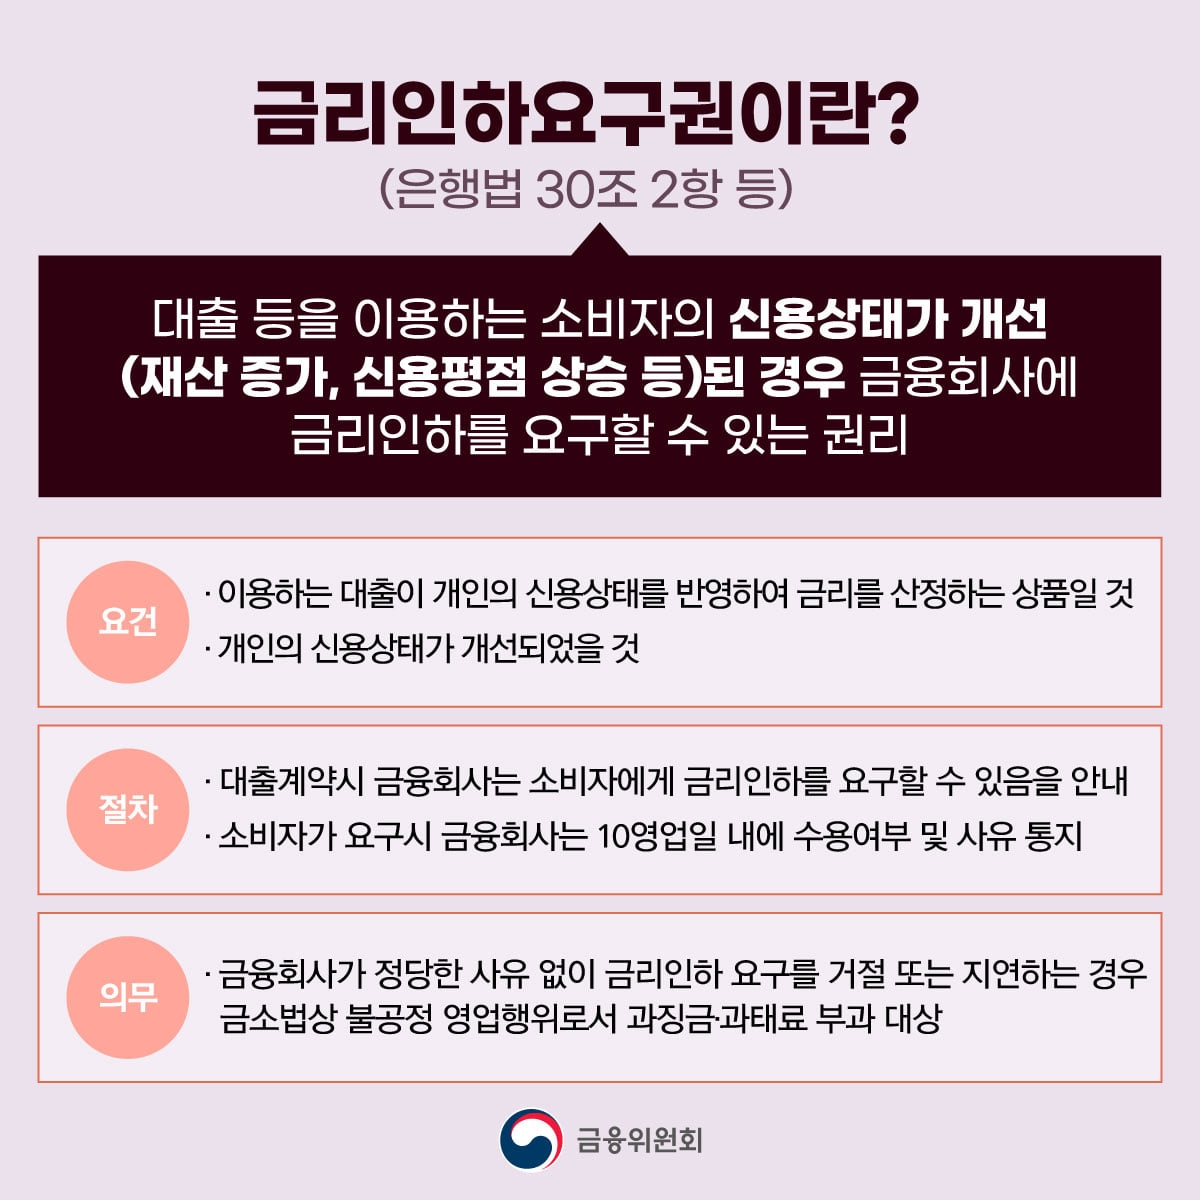 금리인하요구권의 요건과 절차. /자료제공=금융위원회